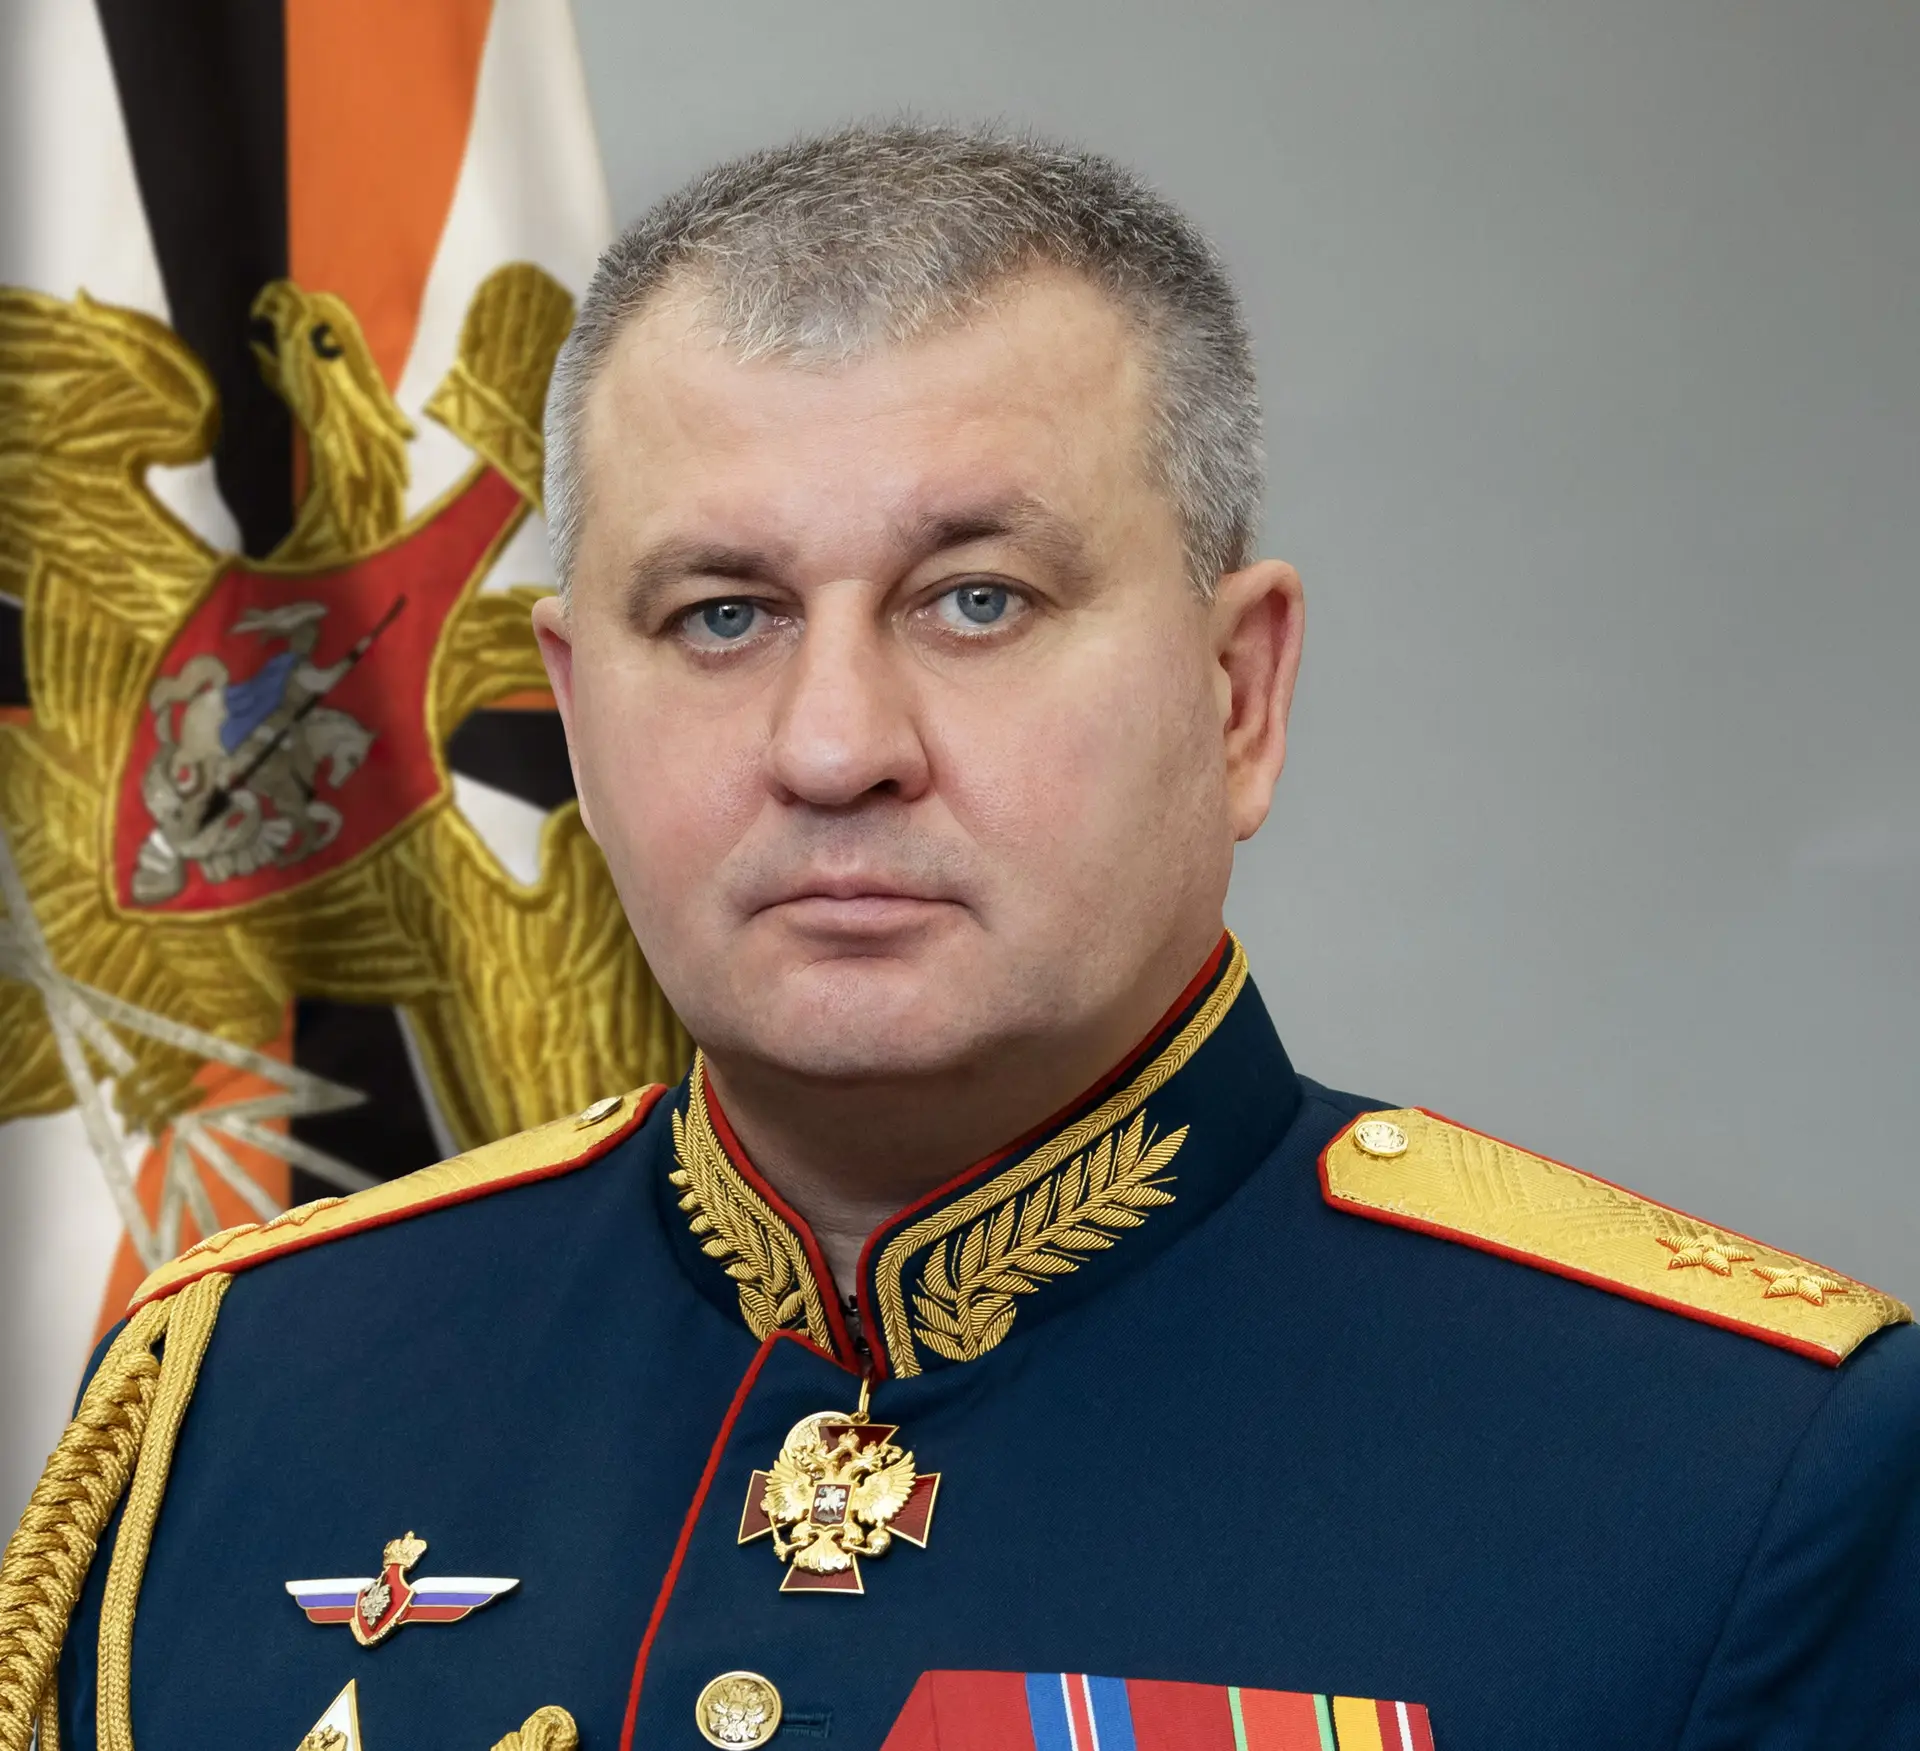 Vice-chefe do Estado-Maior da Rússia detido e acusado de corrupção - SIC  Notícias